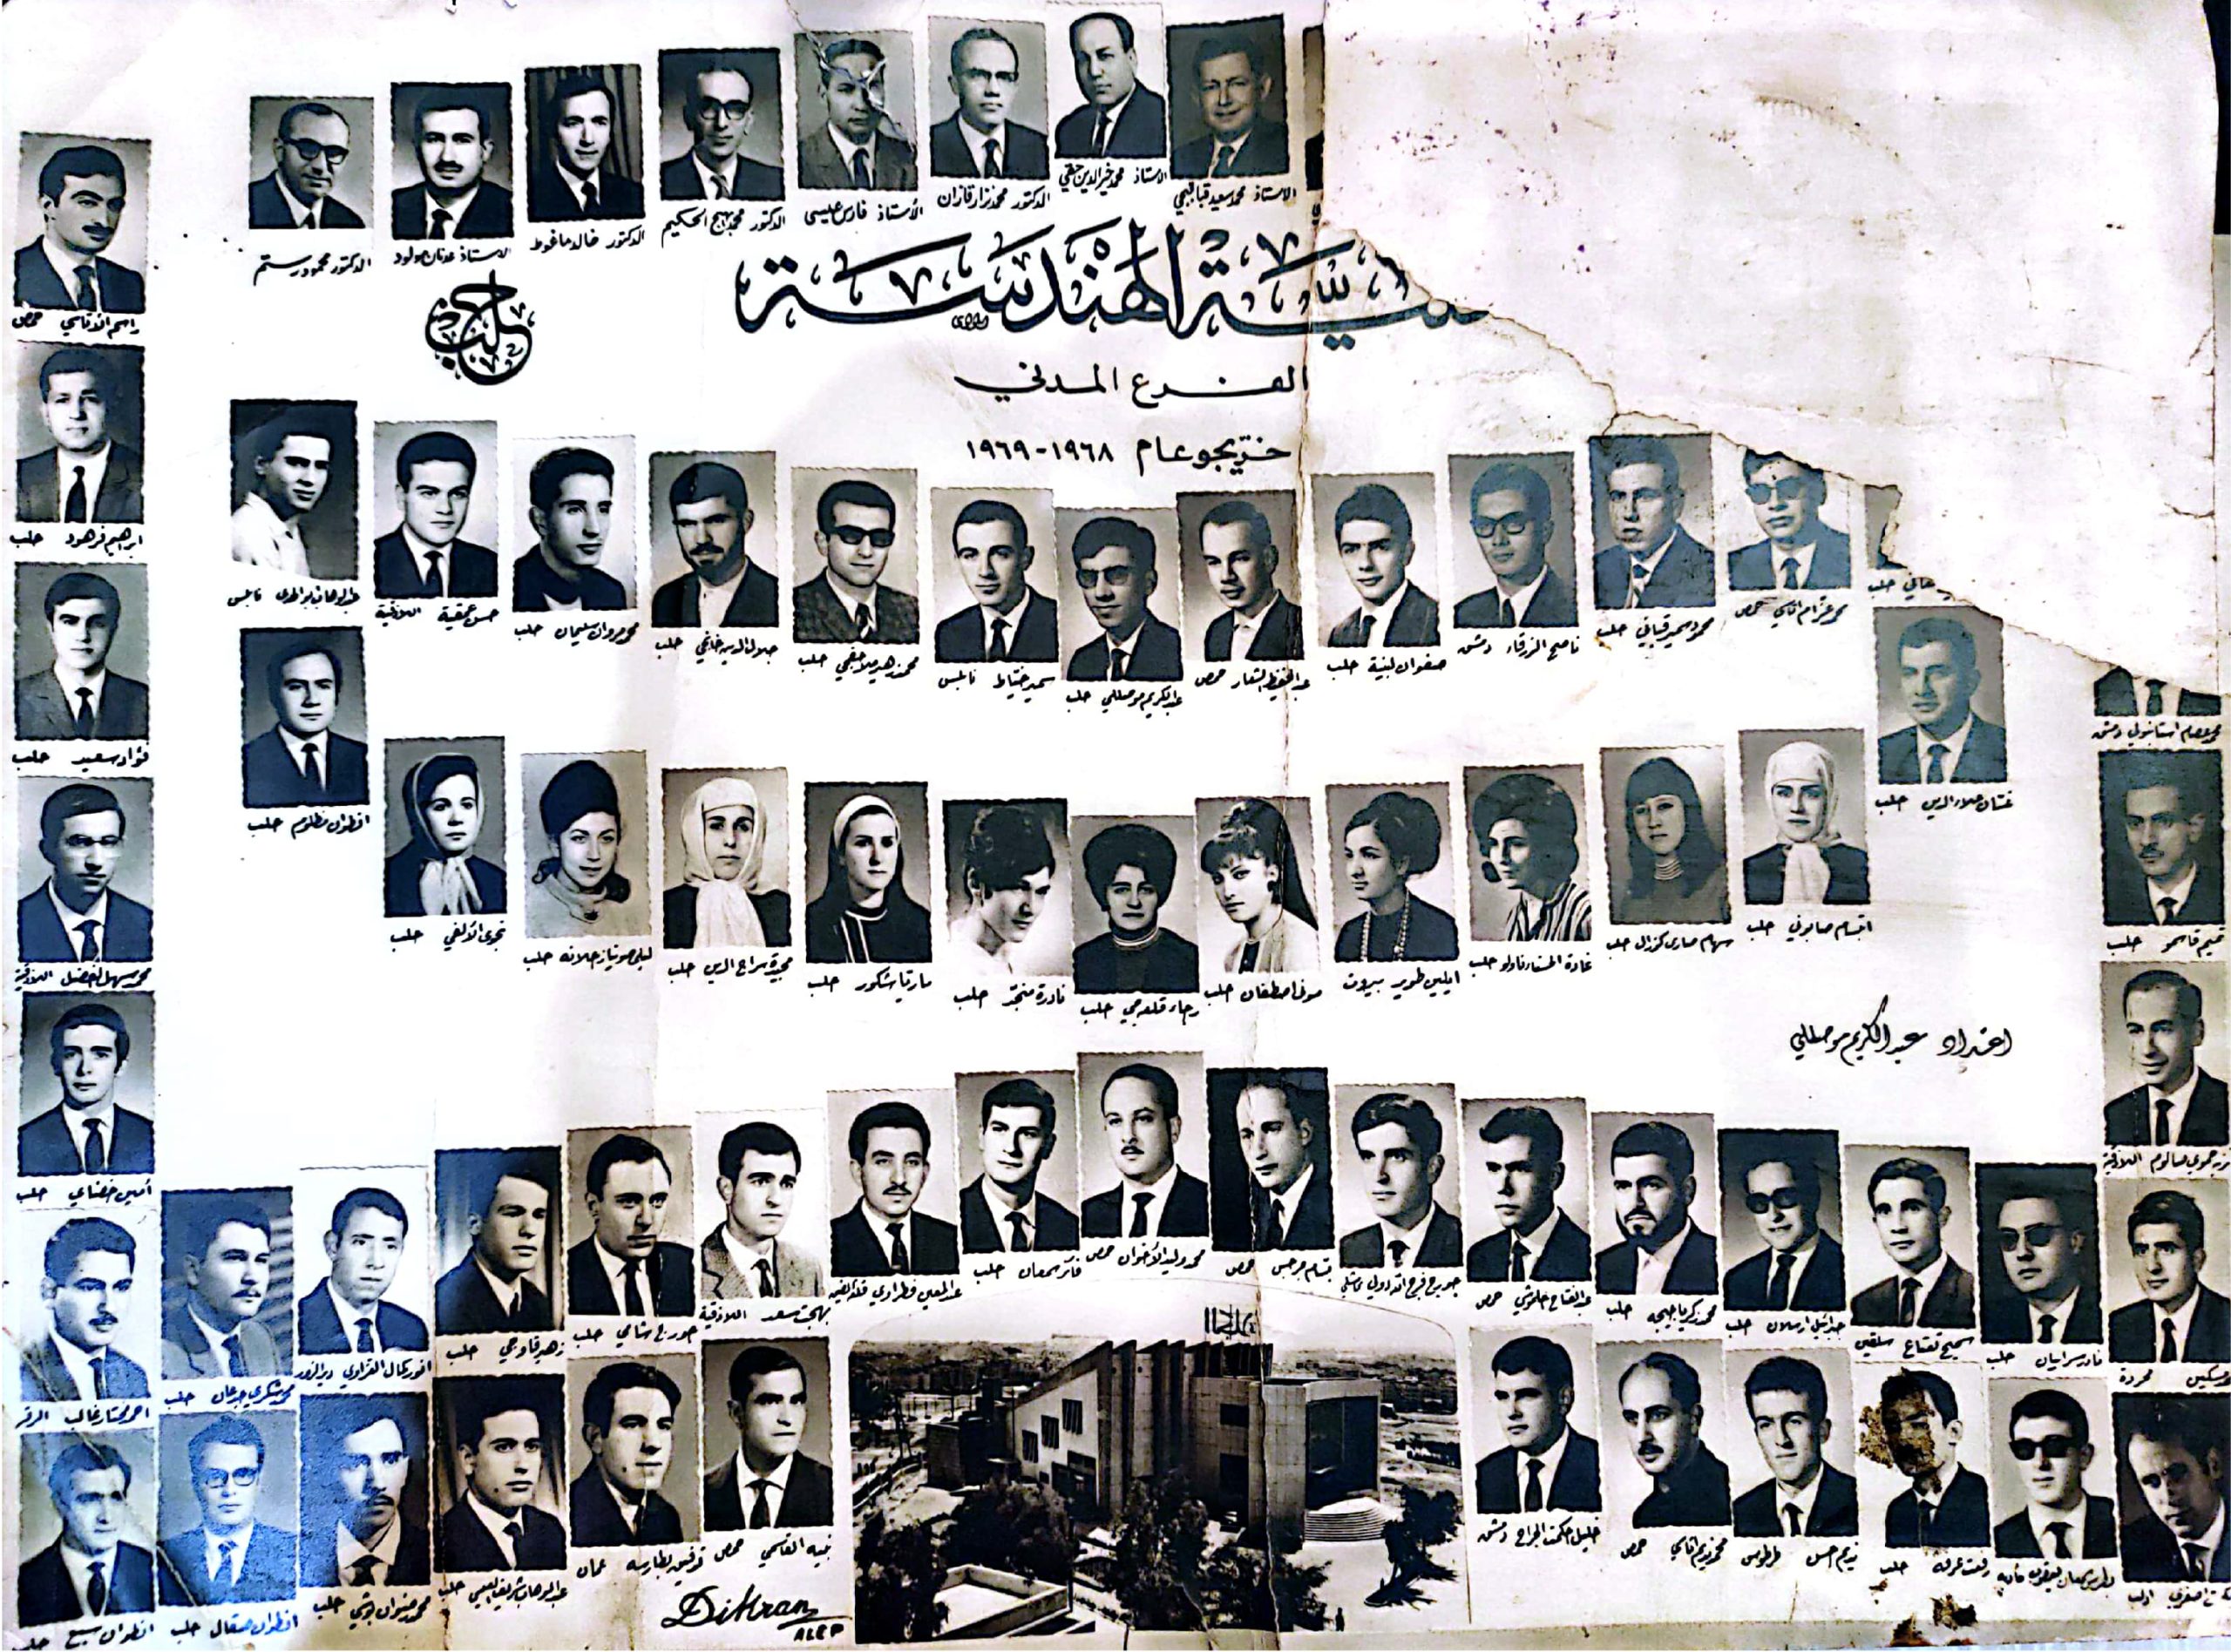 التاريخ السوري المعاصر - خريجو كلية الهندسة المدنية في حلب للعام الدراسي 1968 - 1969